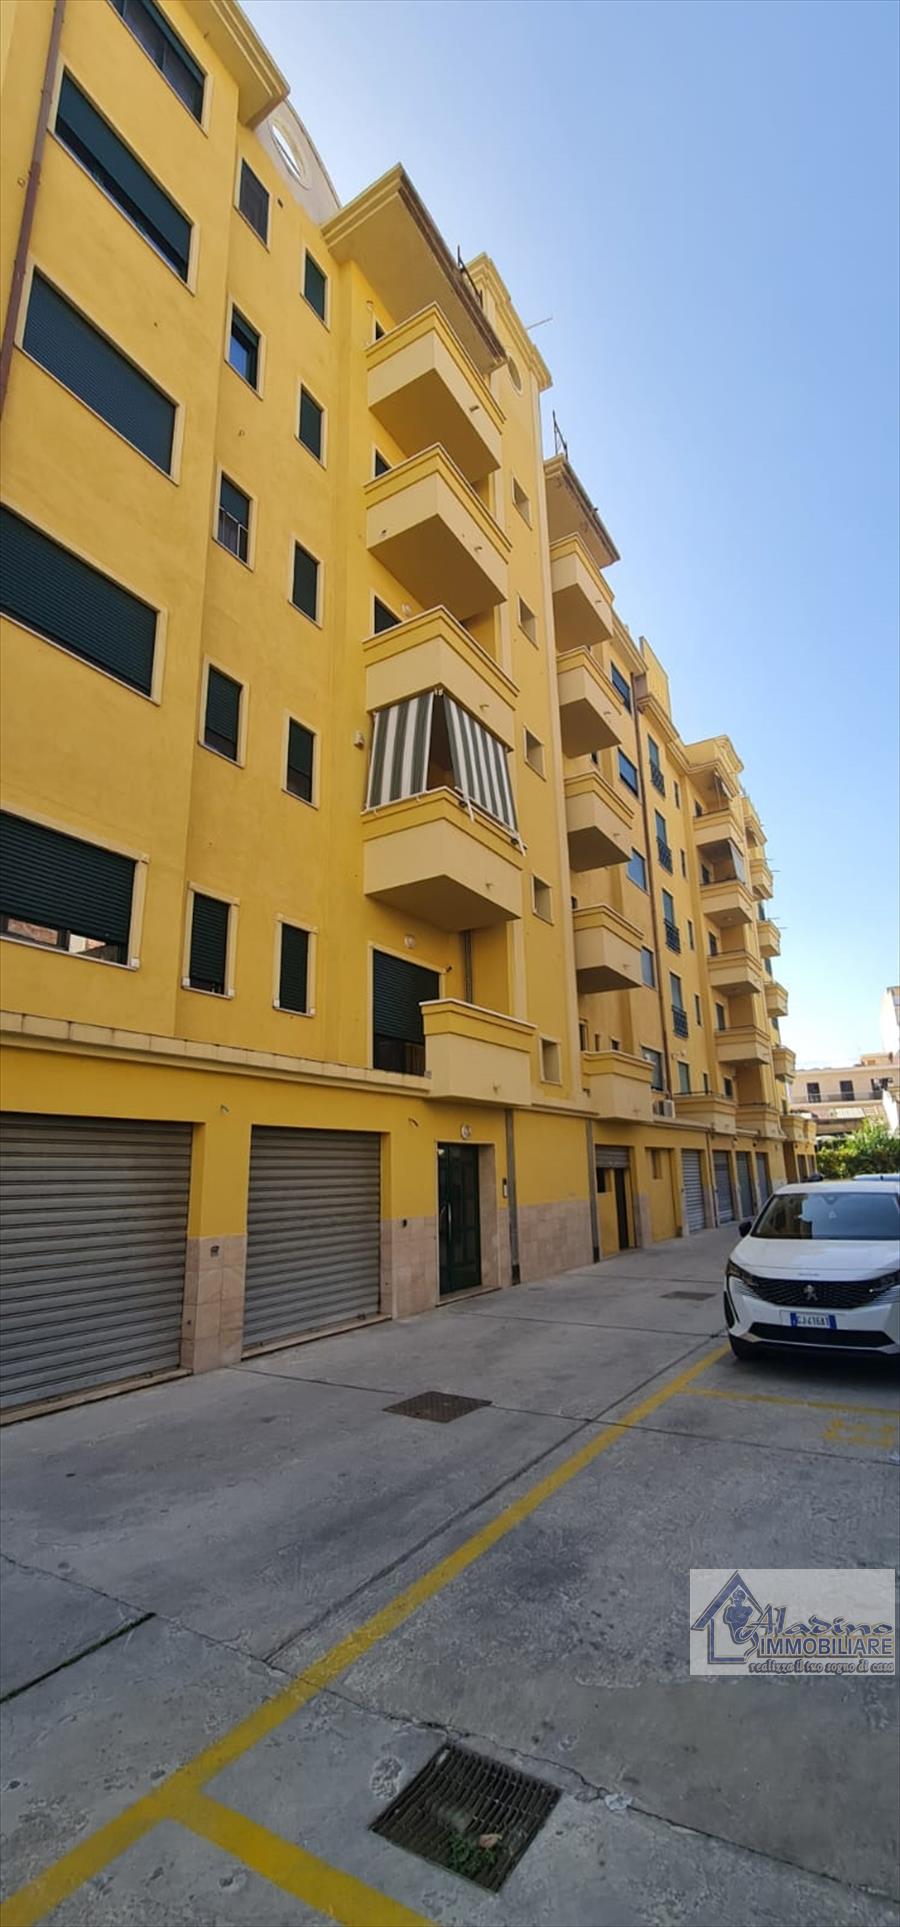 Appartamento in vendita a Reggio Calabria, 4 locali, prezzo € 135.000 | PortaleAgenzieImmobiliari.it